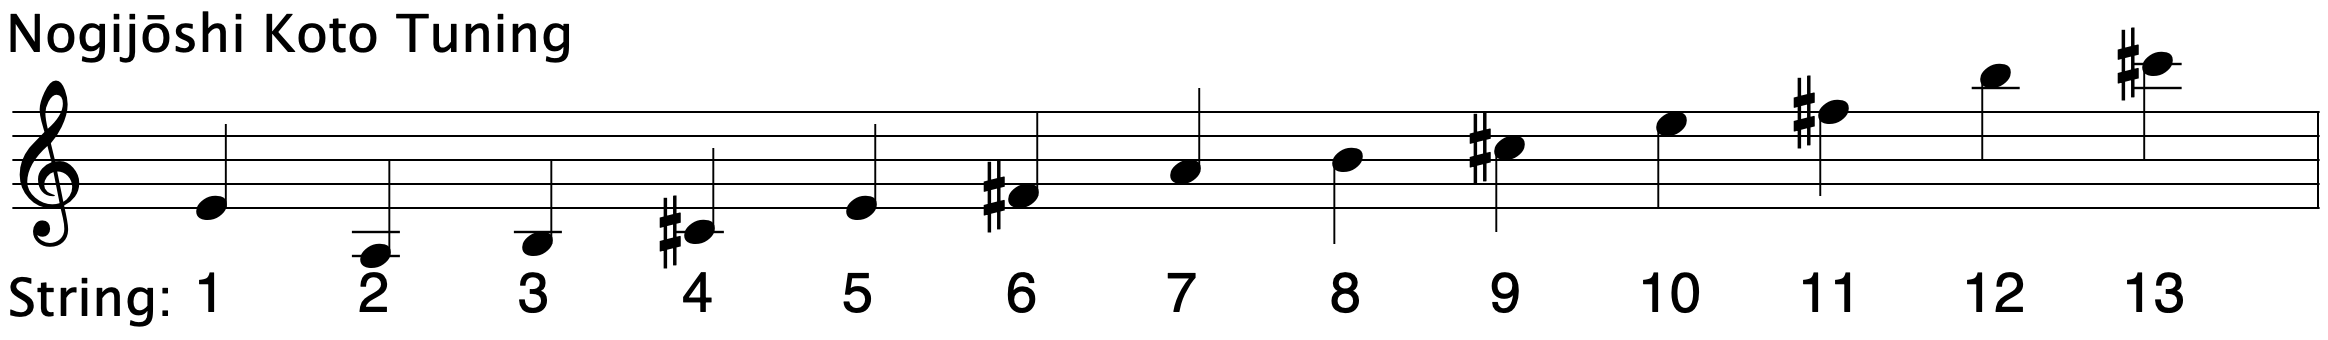  Nogijōshi Koto Tuning ranging from A3 to D6 